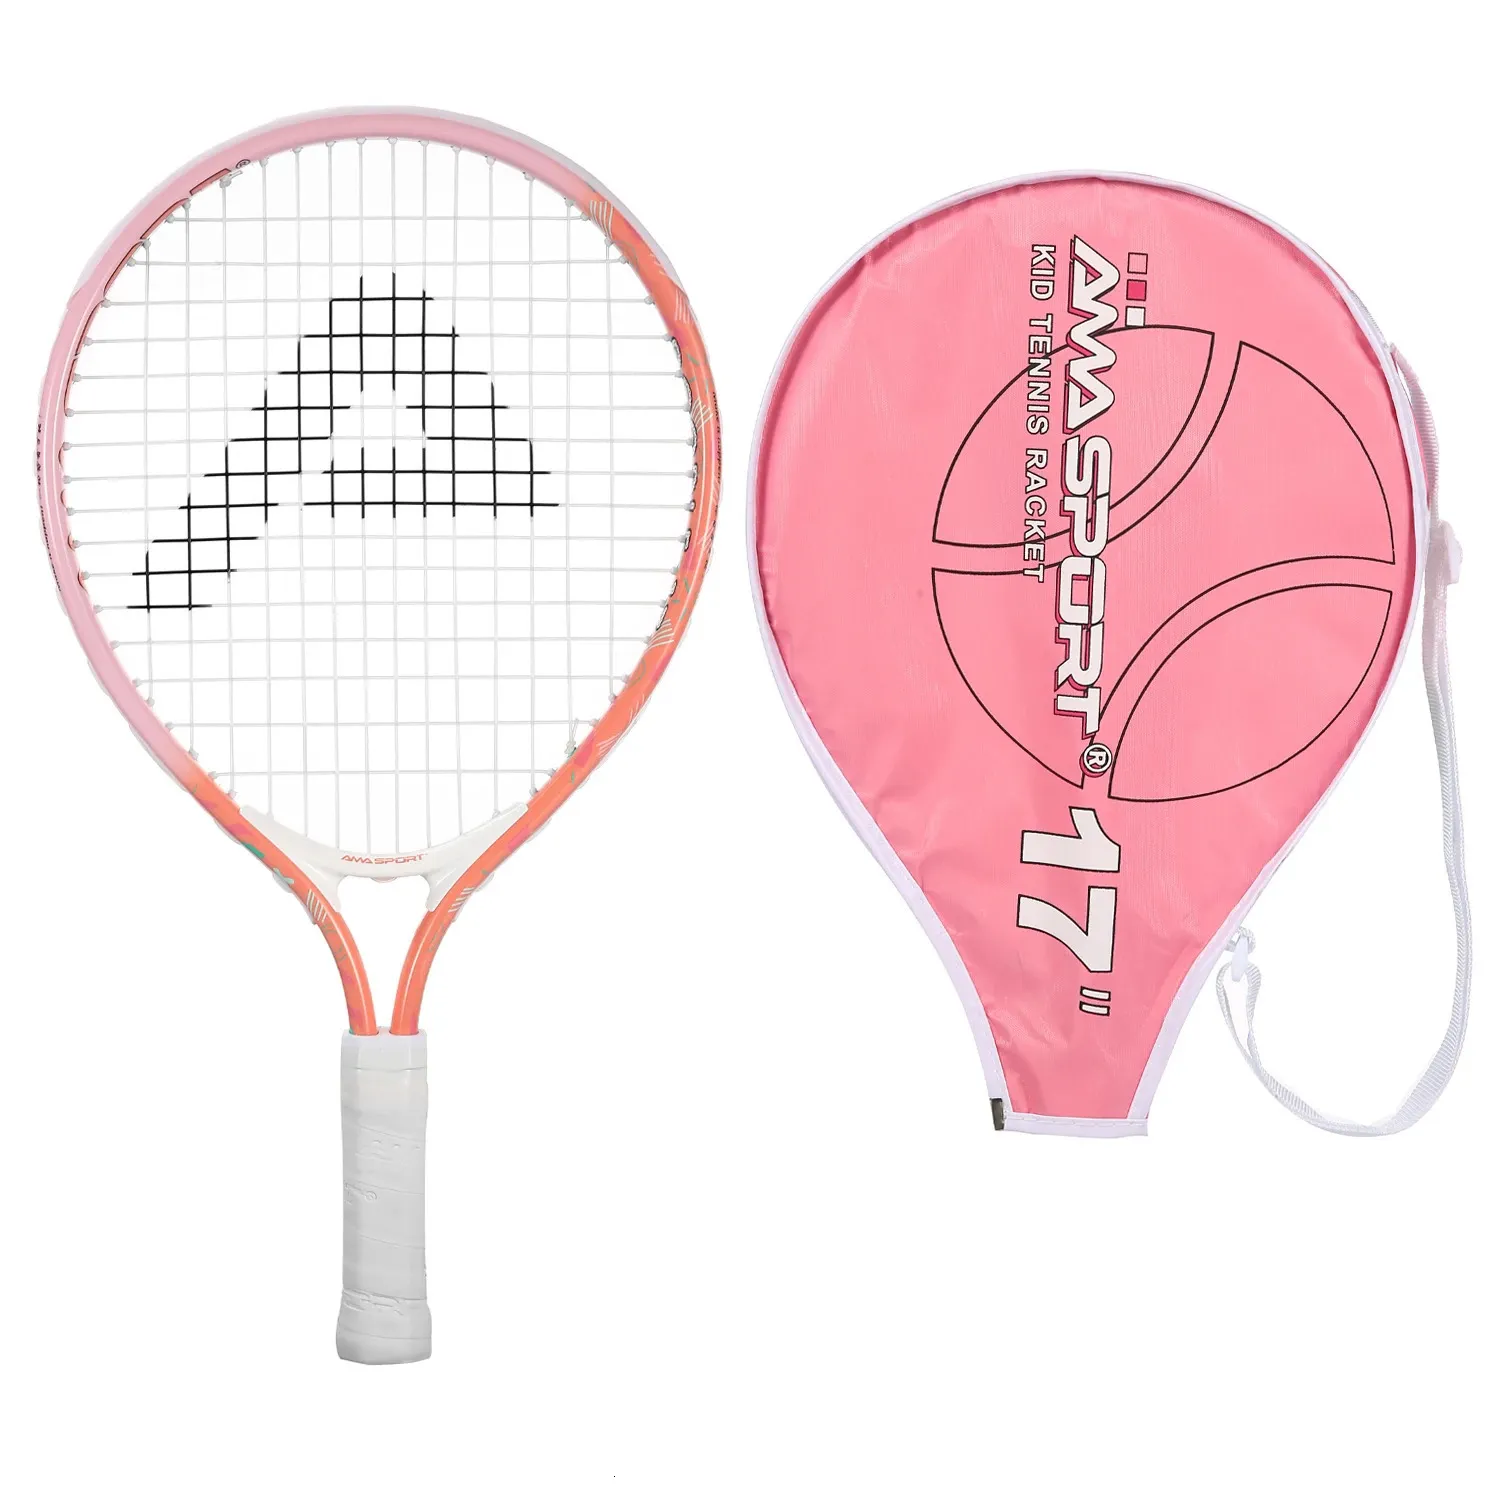 AMASPORT Premium Kids Tennis Racket 1725 Легкий прочный для начинающих от 212 лет Ракетки 240223